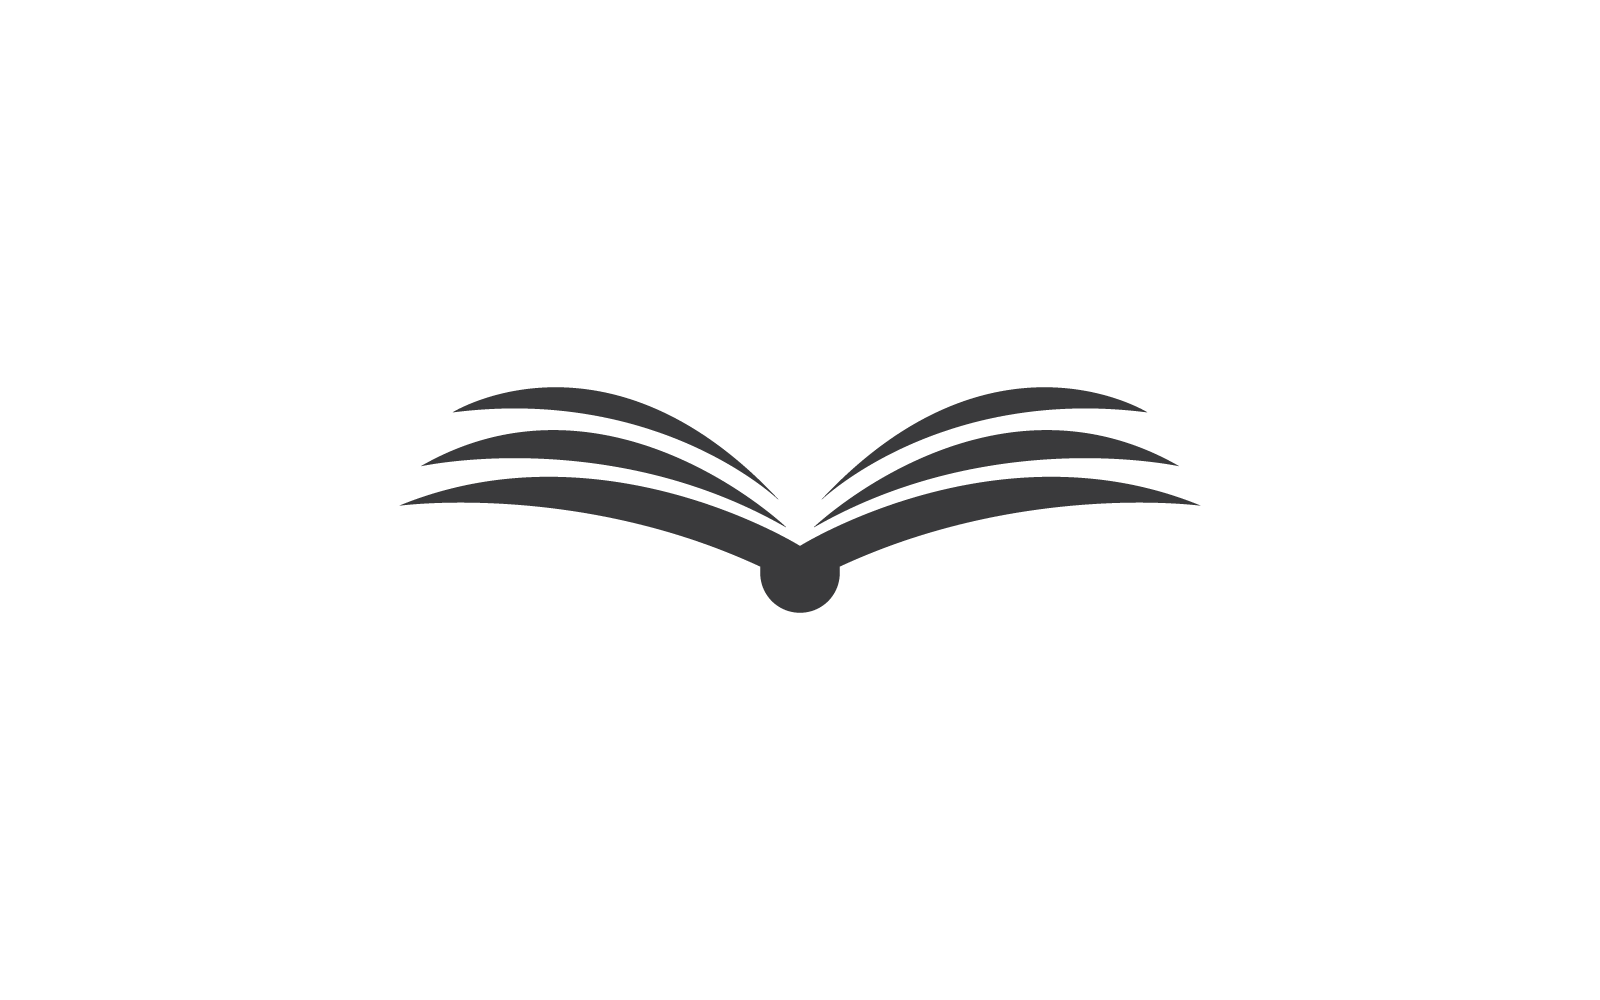 Book education logo vector design